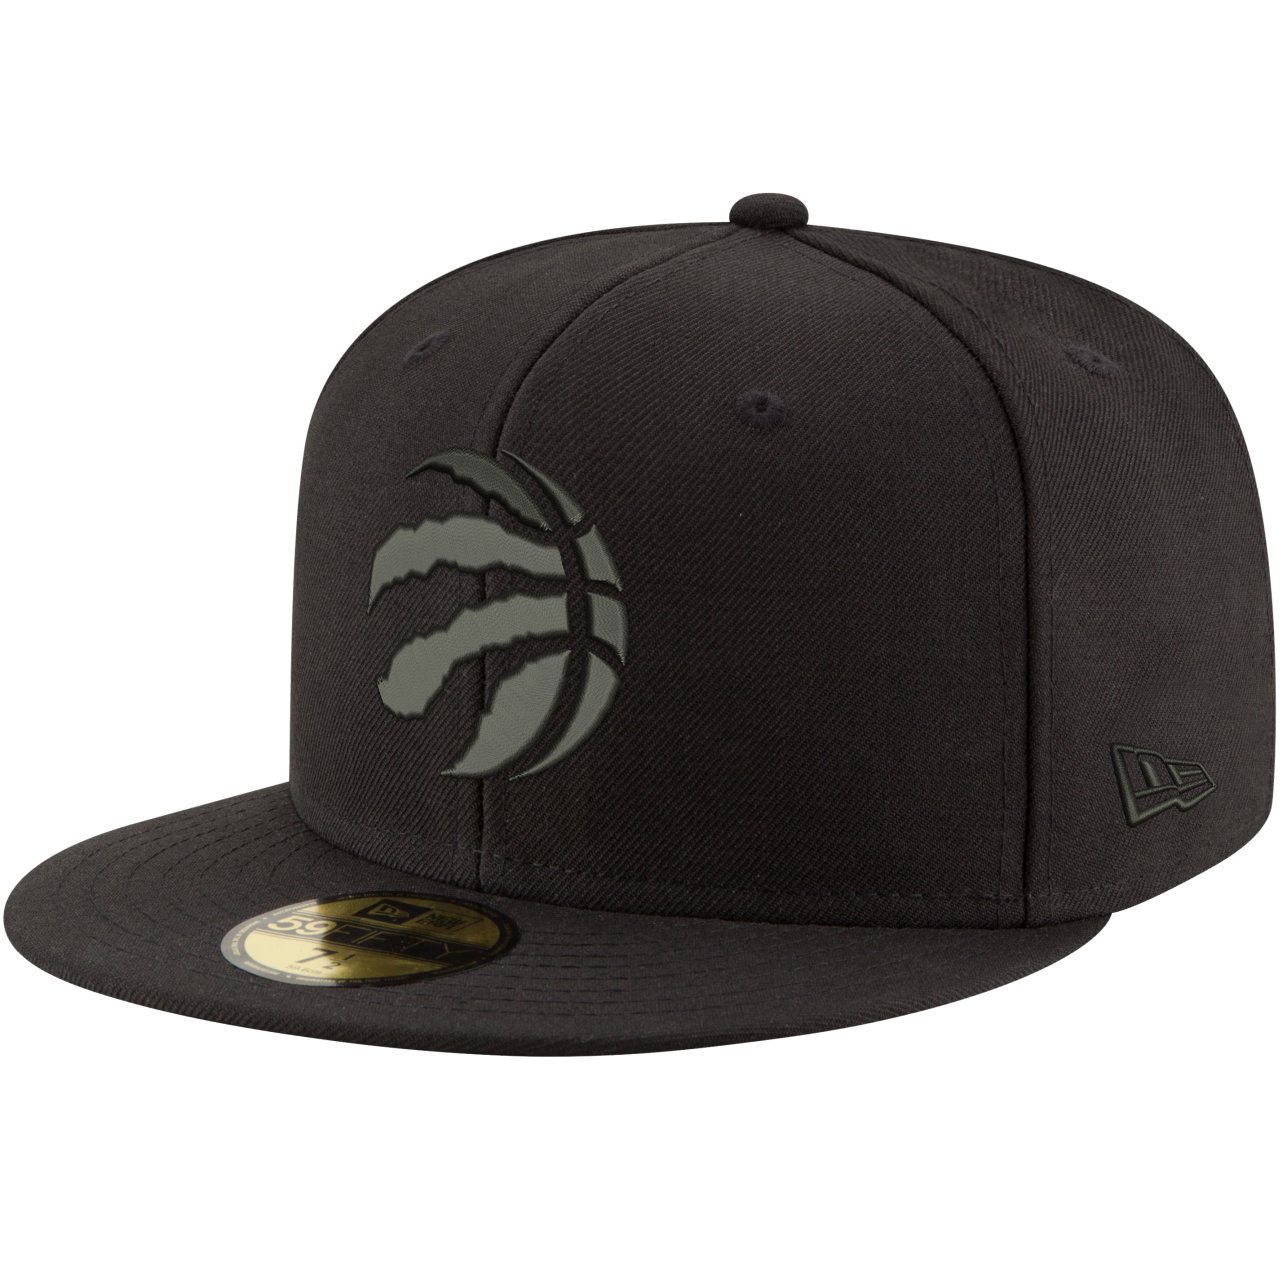 New Era 59Fifty Cap - NBA BLACK Toronto Raptors | Fitted | Caps ...